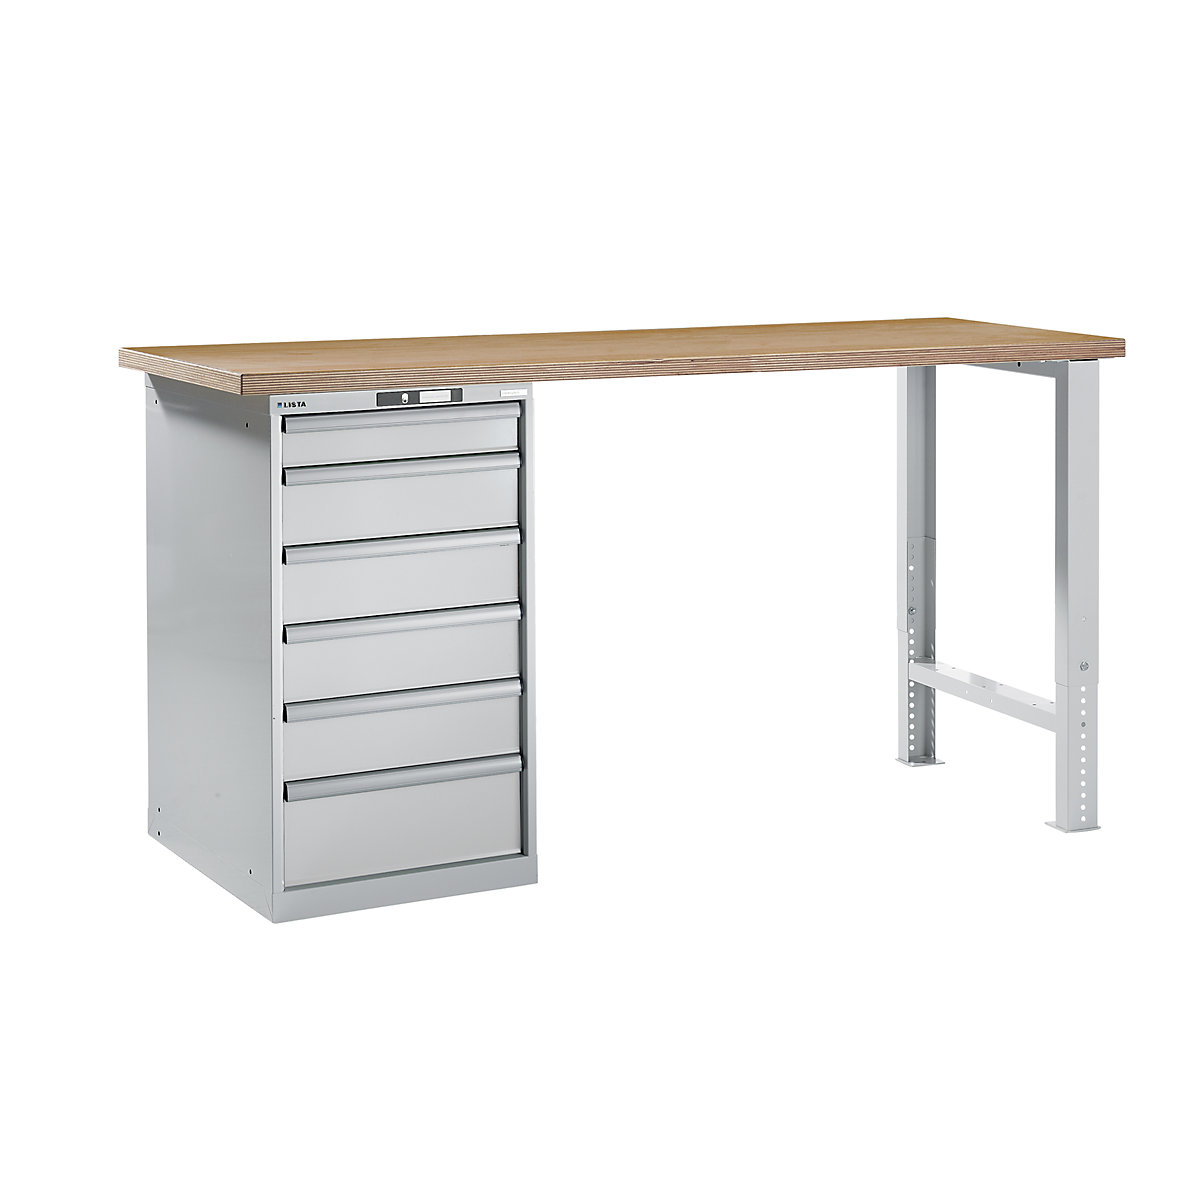 Dílenský stůl ve stavebnicovém systému – LISTA, výška 1040 mm, podstavná skříňka, 6 zásuvky, světle šedá, šířka stolu 2000 mm-5